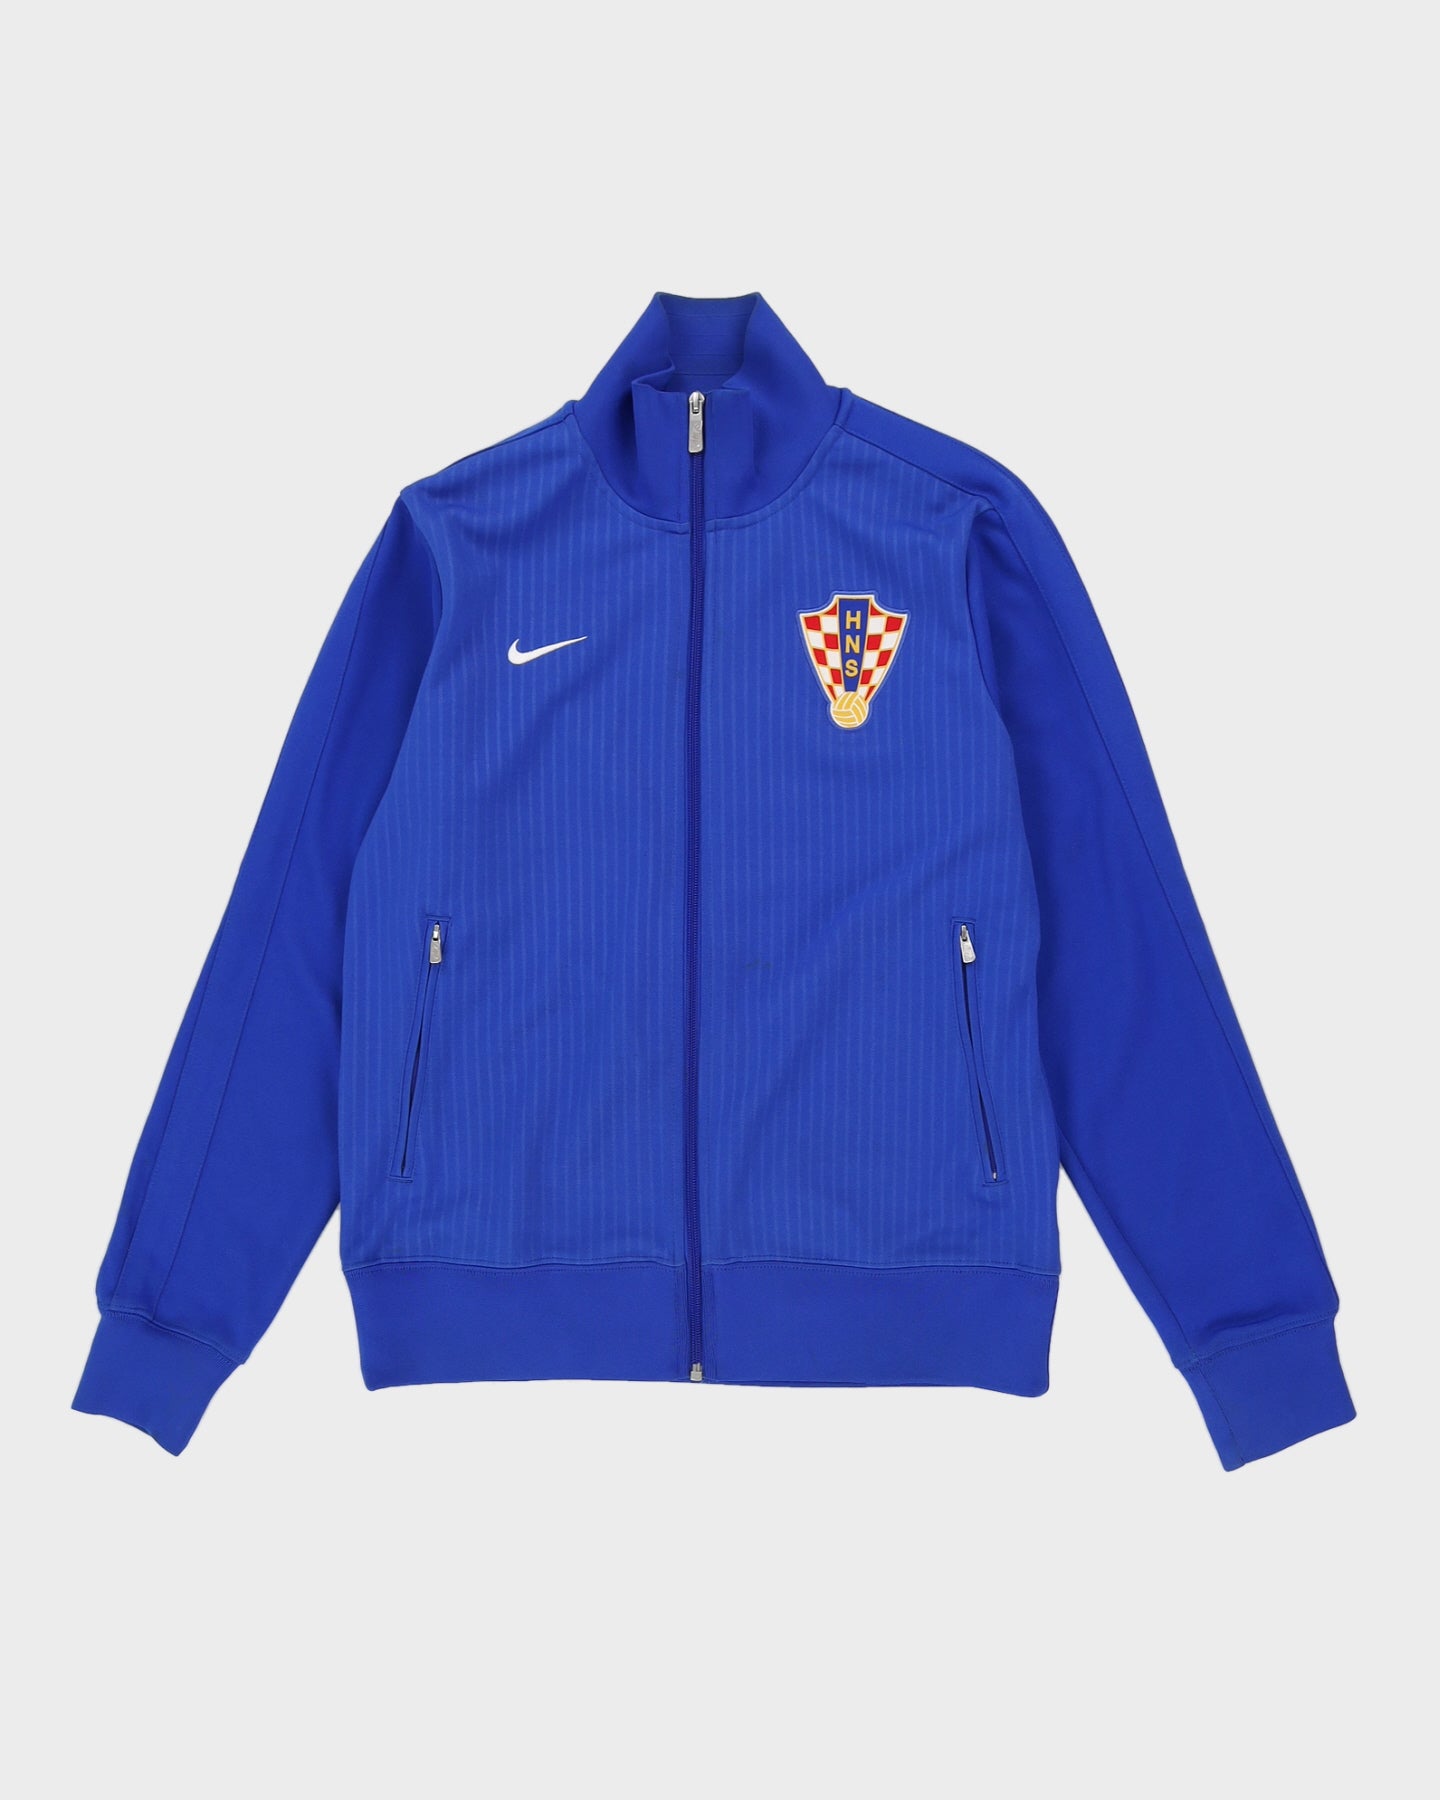 Croatia International Football Team Track Jacket - M